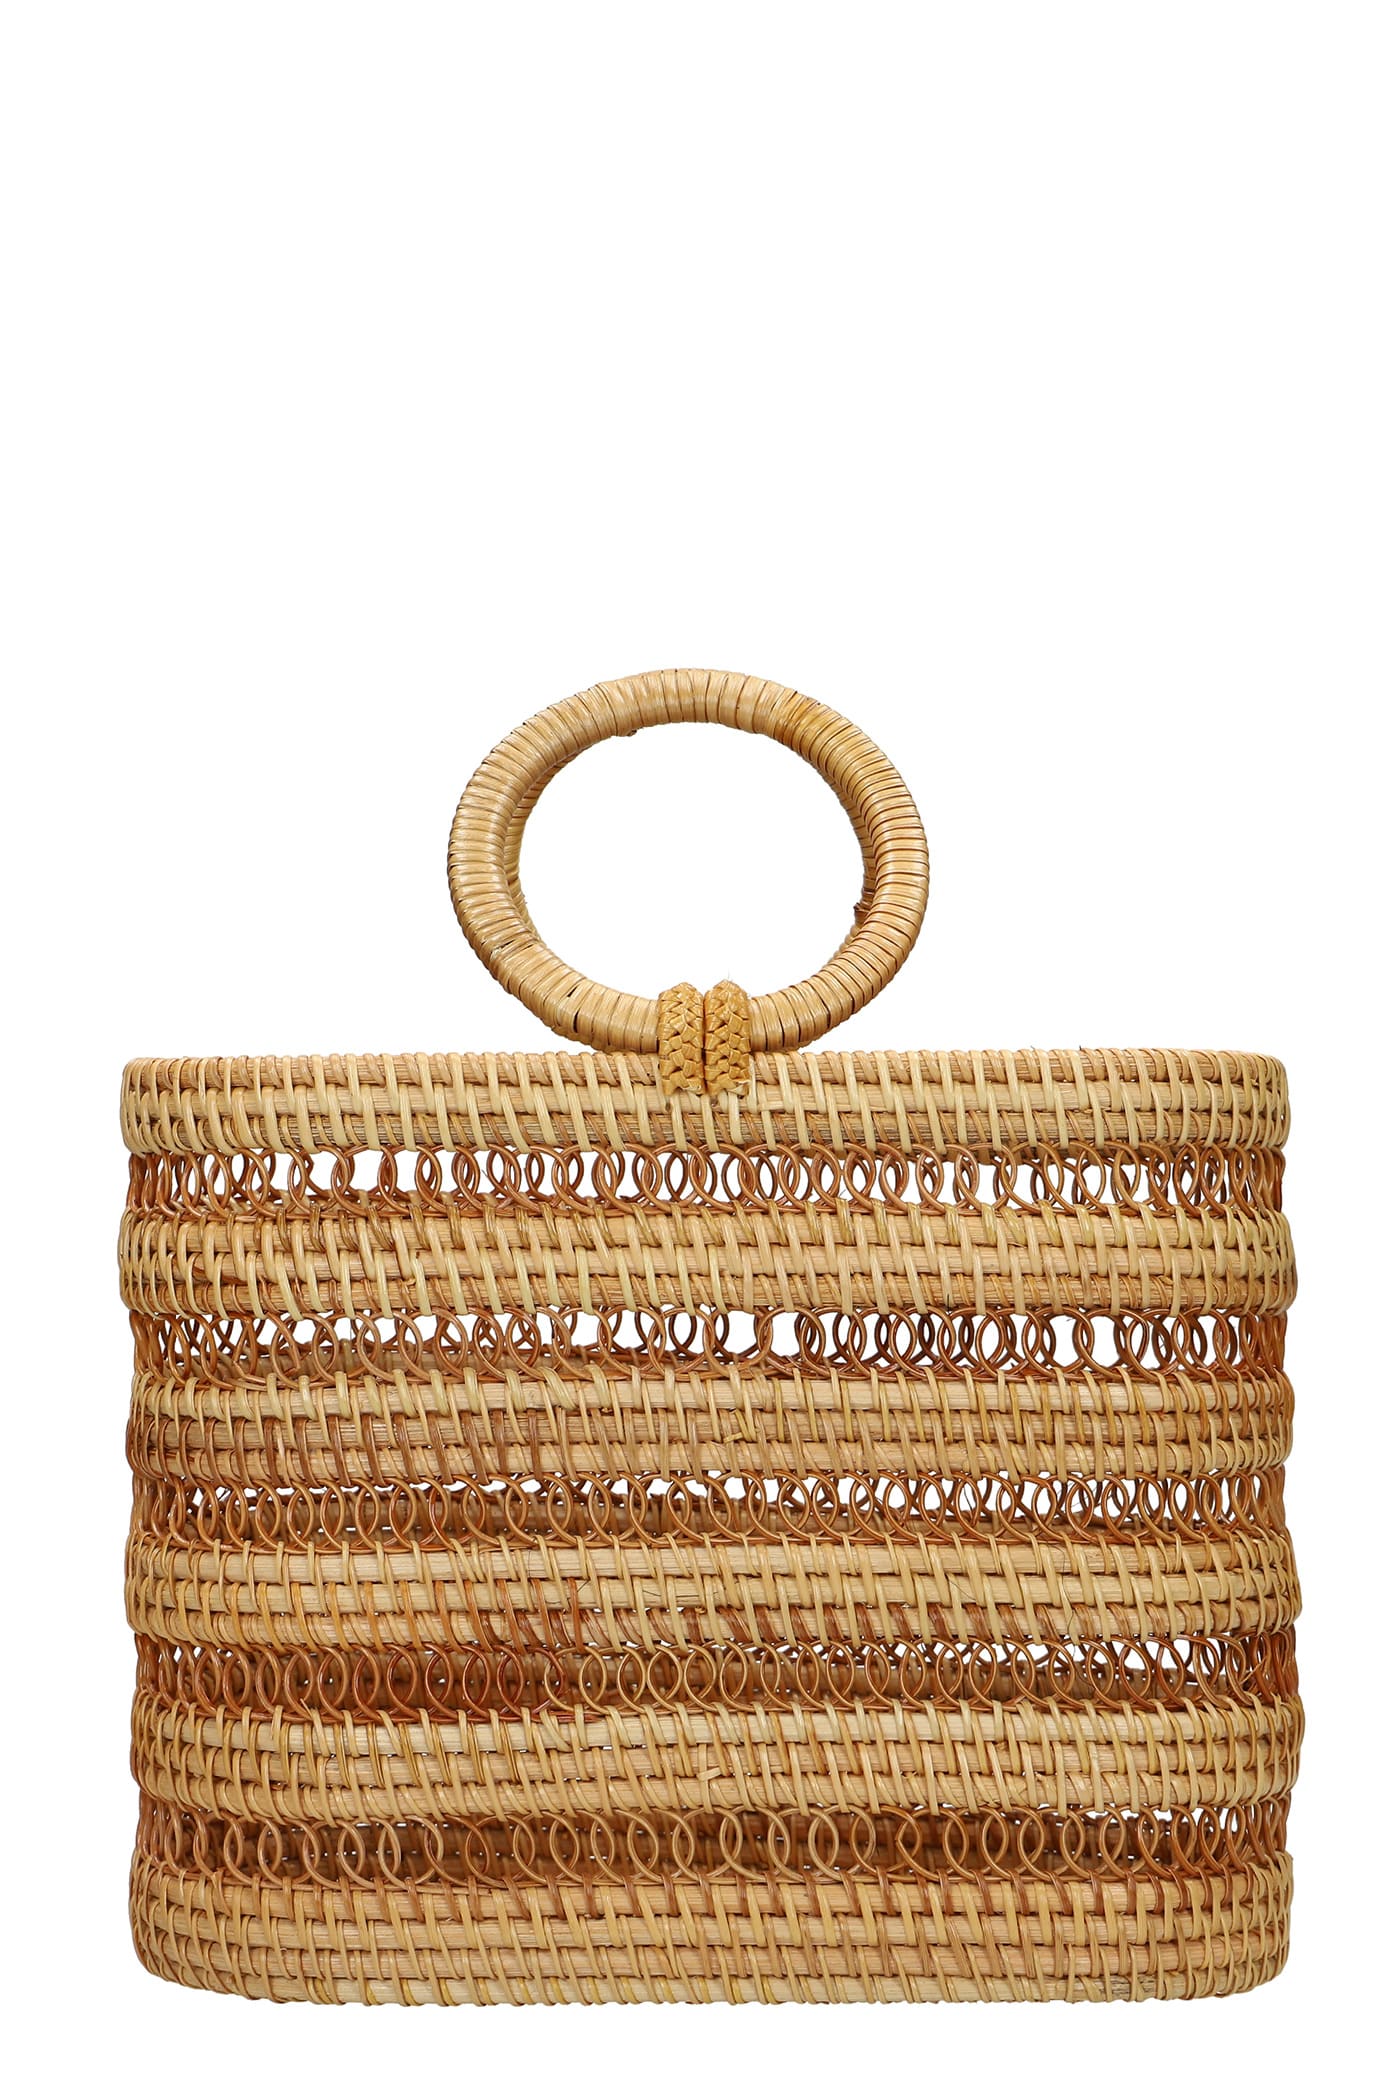 CULT GAIA Handbags for Women | ModeSens